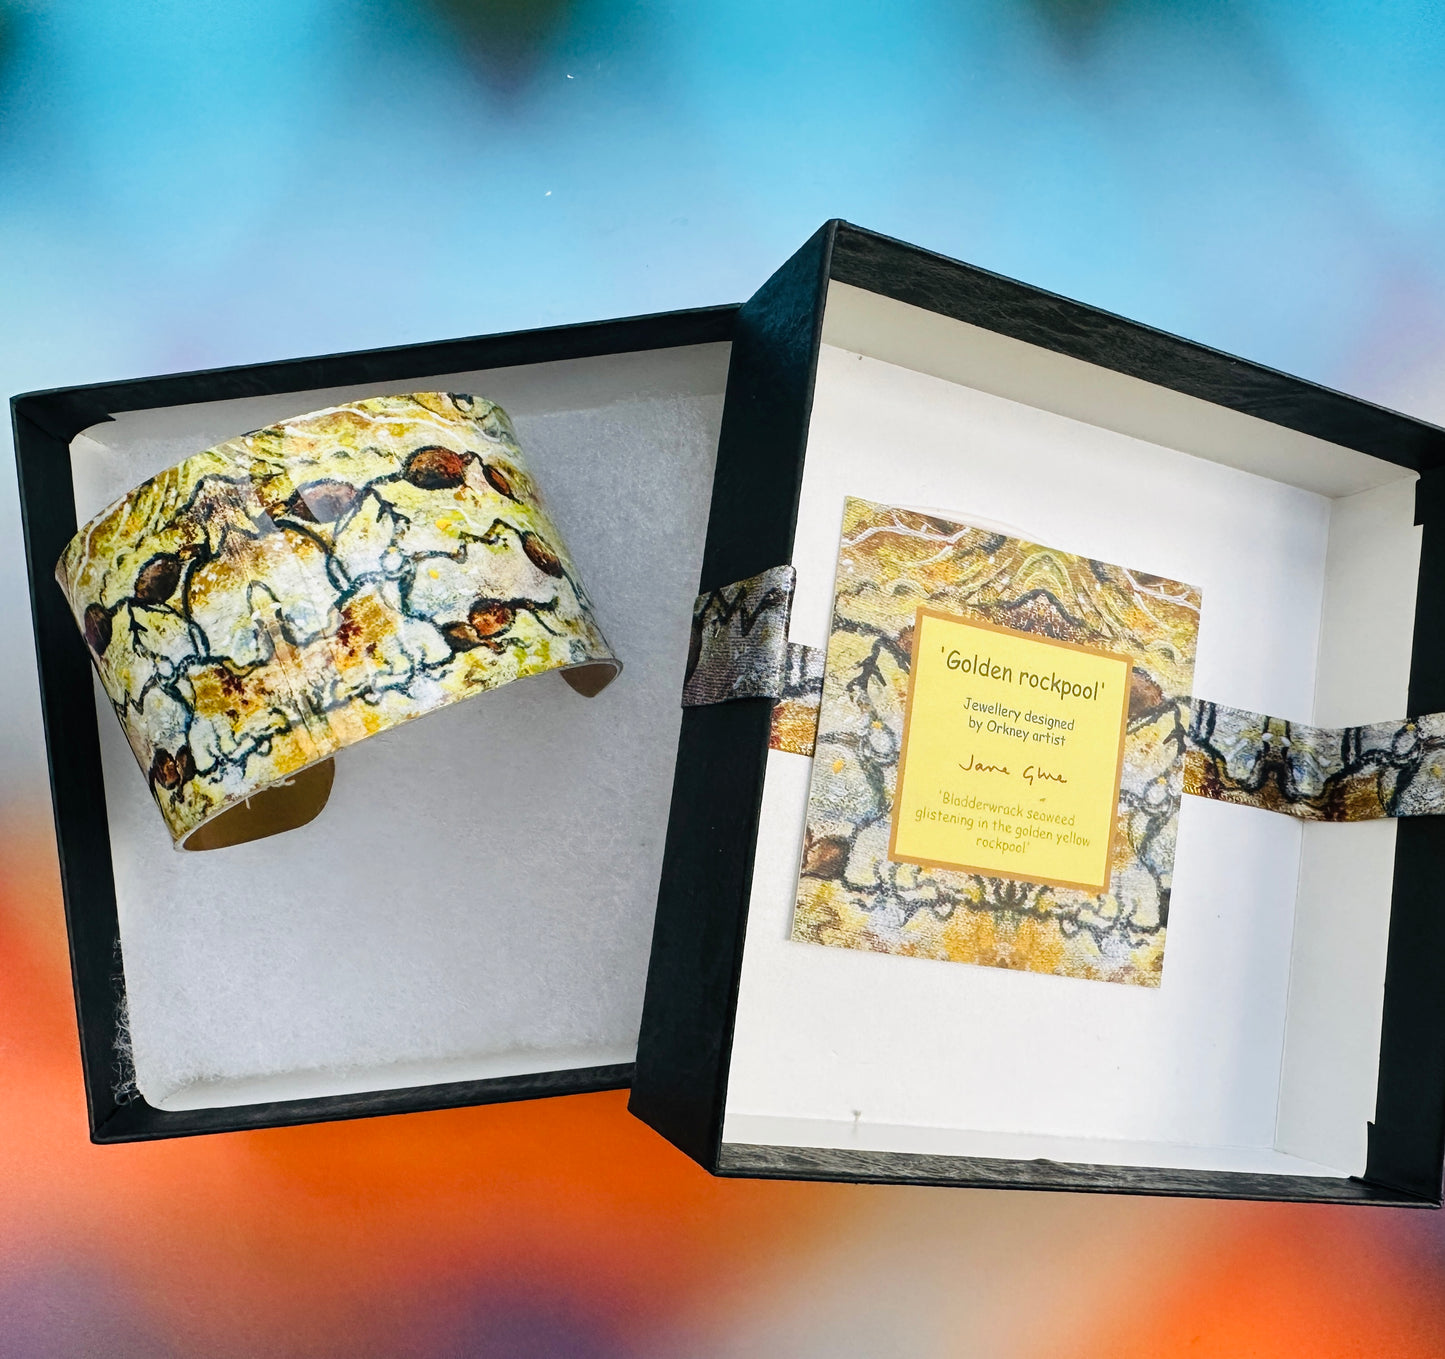 Jewellery by Jane Glue, 'Golden rockpool' Cuff bracelet